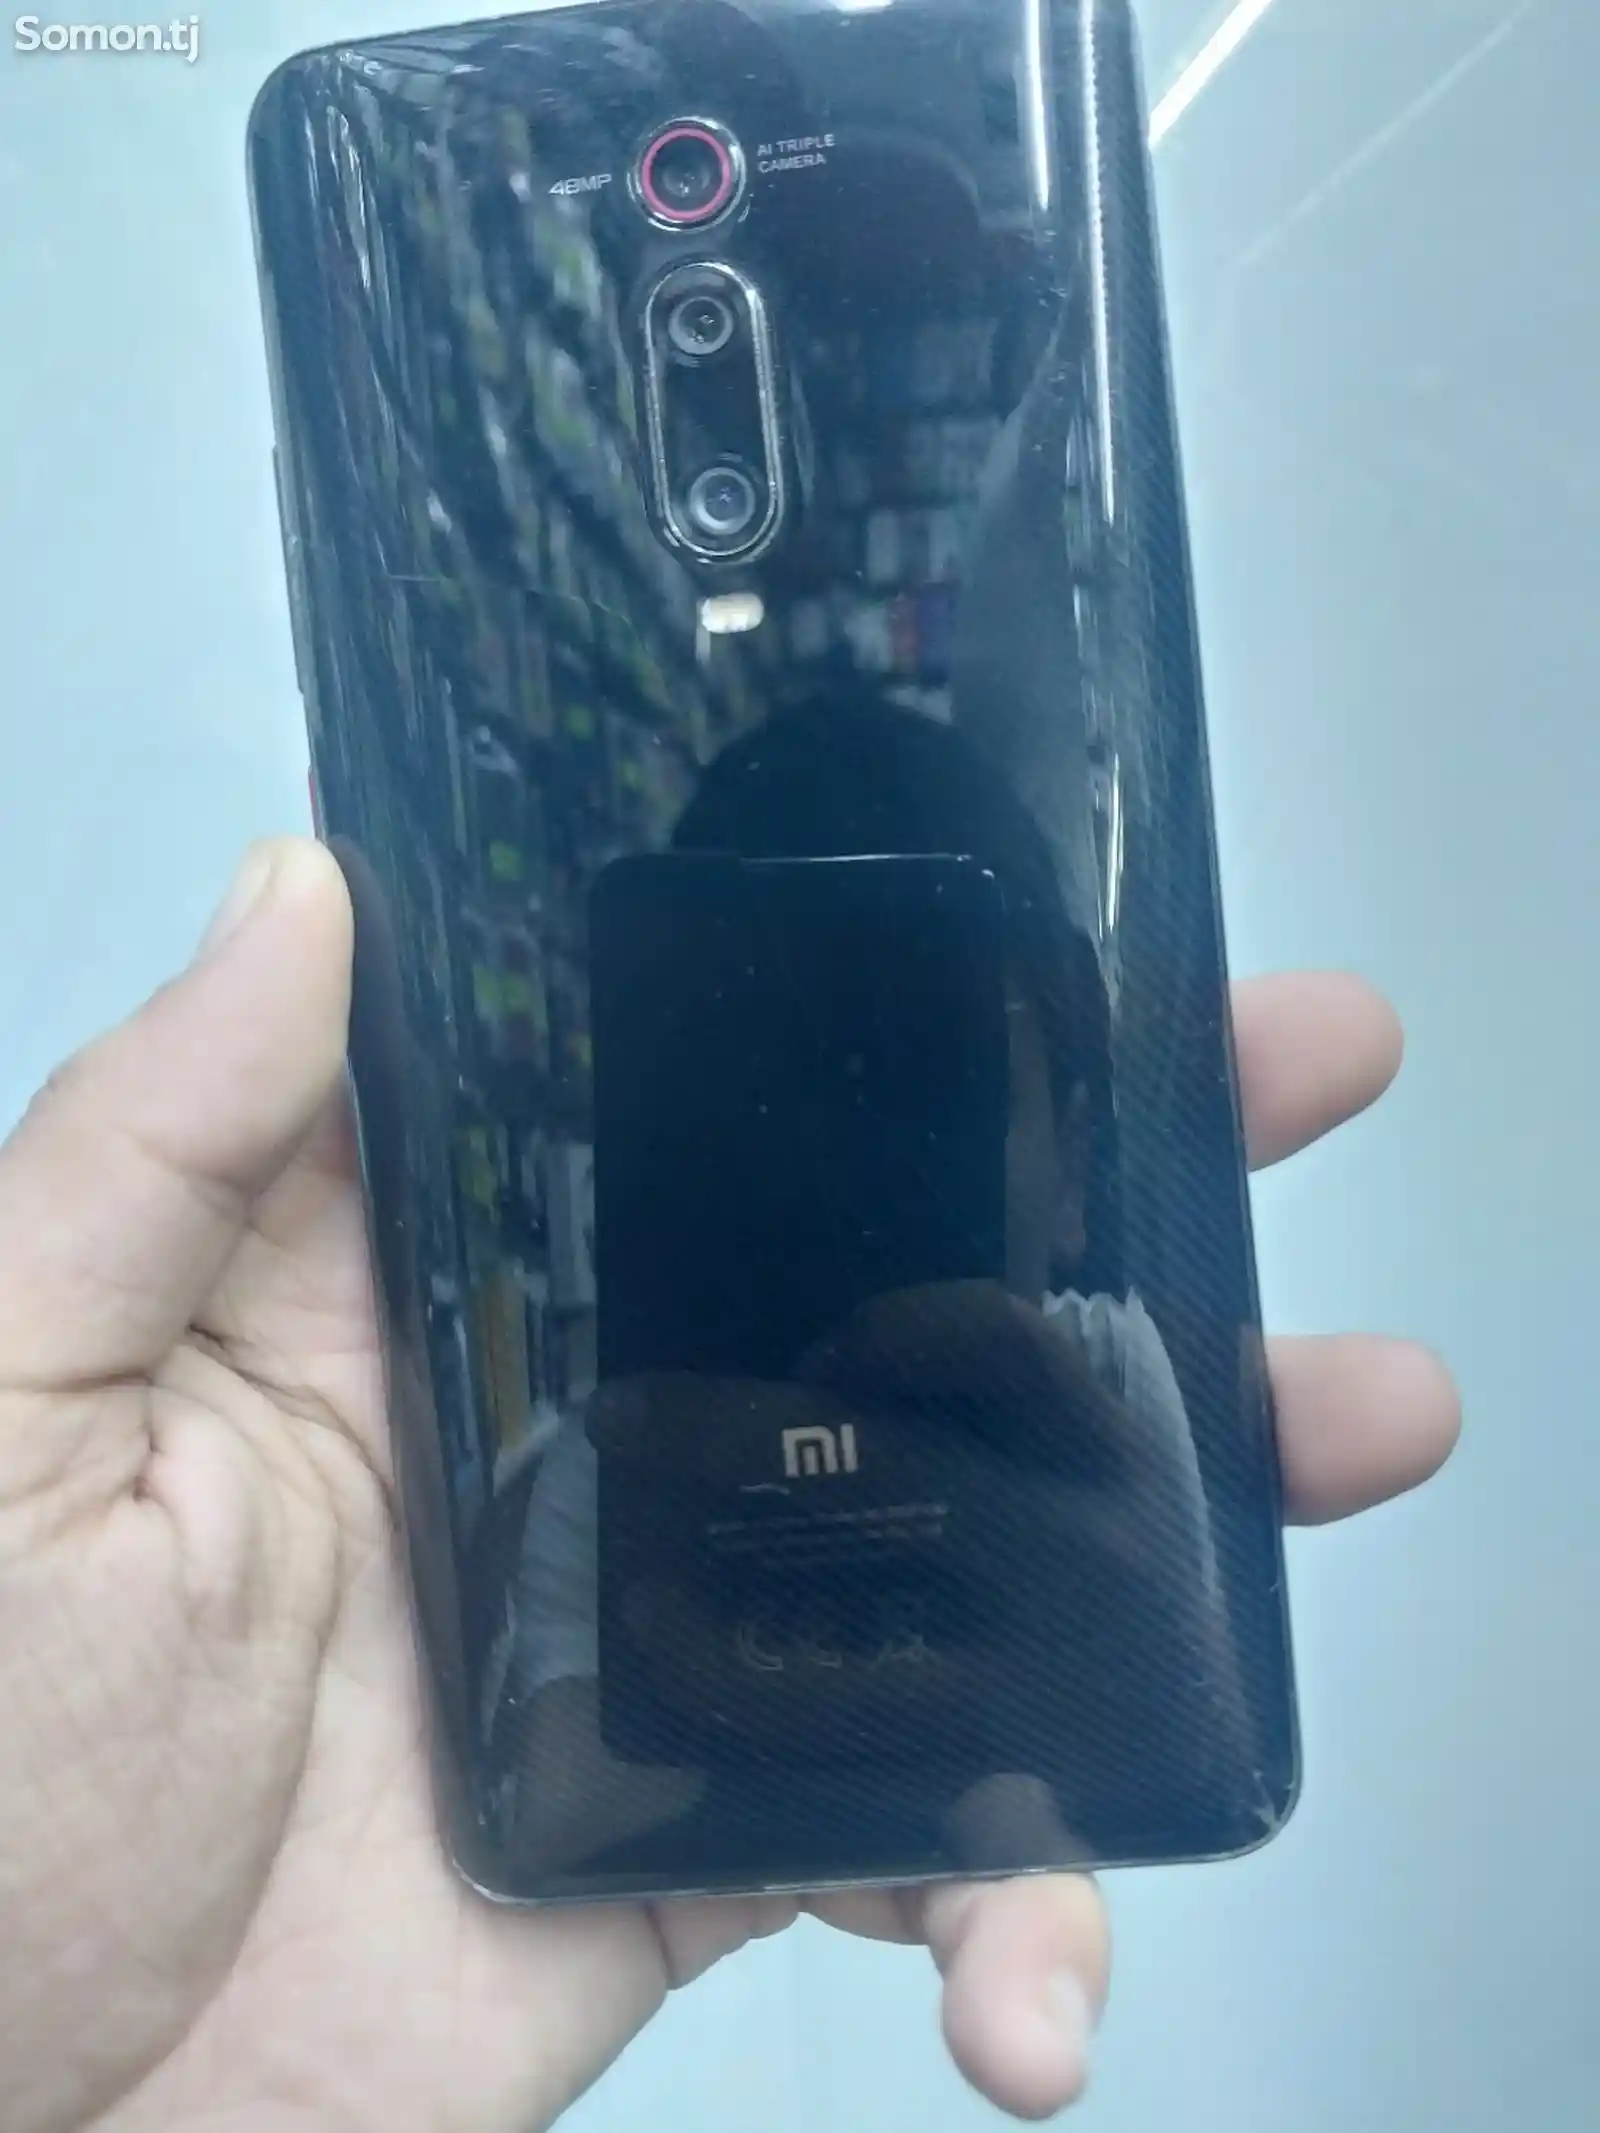 Xiaomi Mi 9T-1